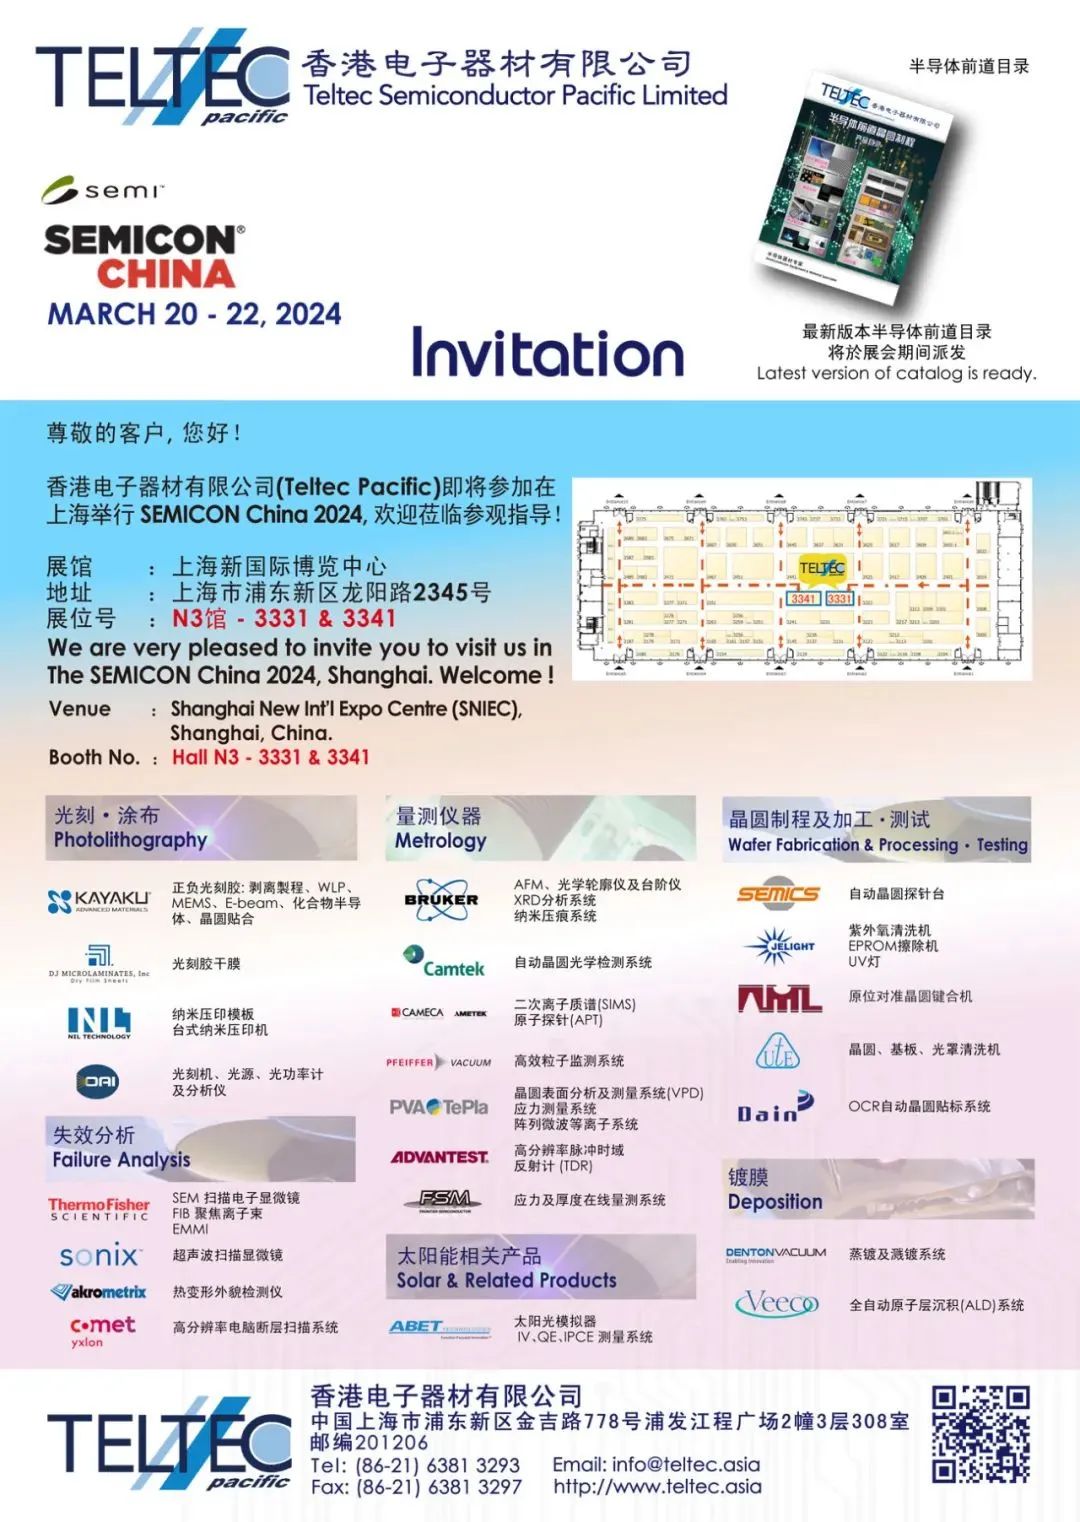 Semicon China 2024 - 香港电子团队精神奕奕为各位贵宾服务，展位#N3-3331 & N3-3341（双展台）